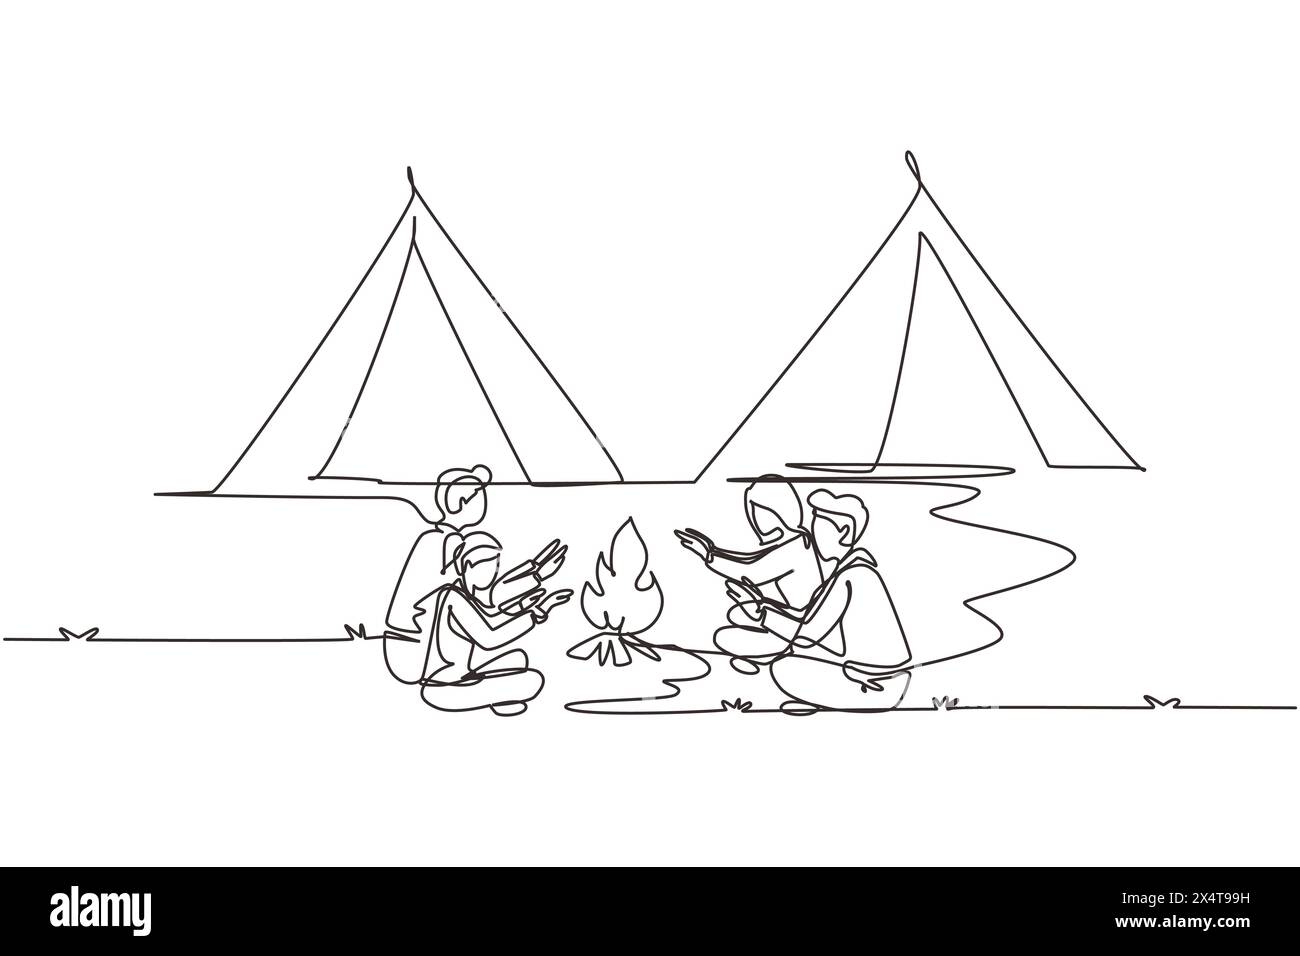 Una fila singola che disegna due coppie in campeggio intorno alle tende da campeggio. Un gruppo di uomini e donne si scaldano le mani vicino al falò seduto a terra. Gita nella natura selvaggia Illustrazione Vettoriale